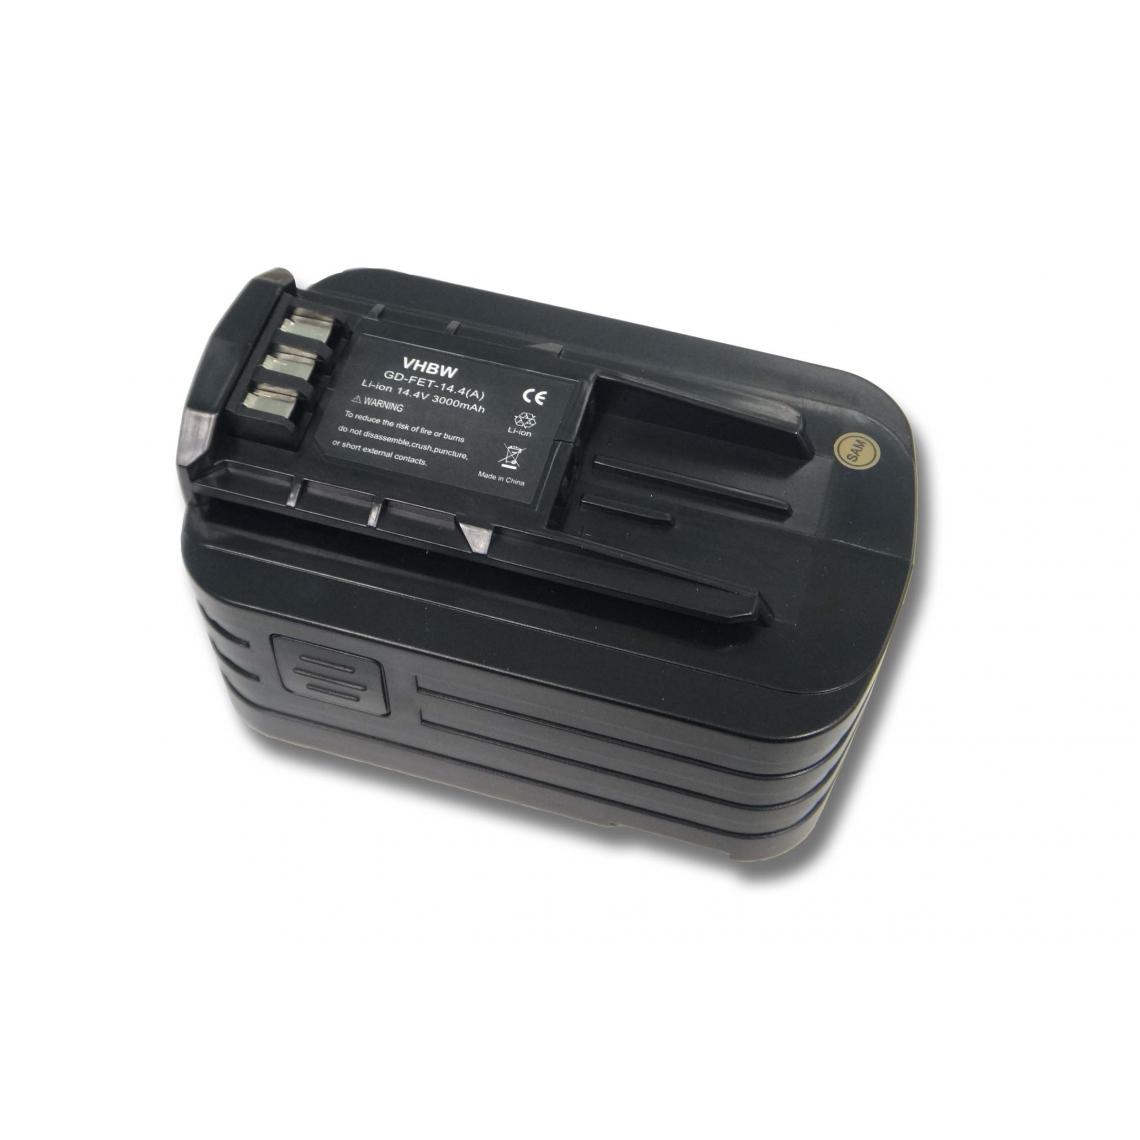 Vhbw - Batterie Ni-MH vhbw 3000mAh (14.4V) pour outils Festo Festool Cordless Drill, Driver C15, C15, DRC15, DRC18, T15, T15+3, T18 - Accessoires vissage, perçage